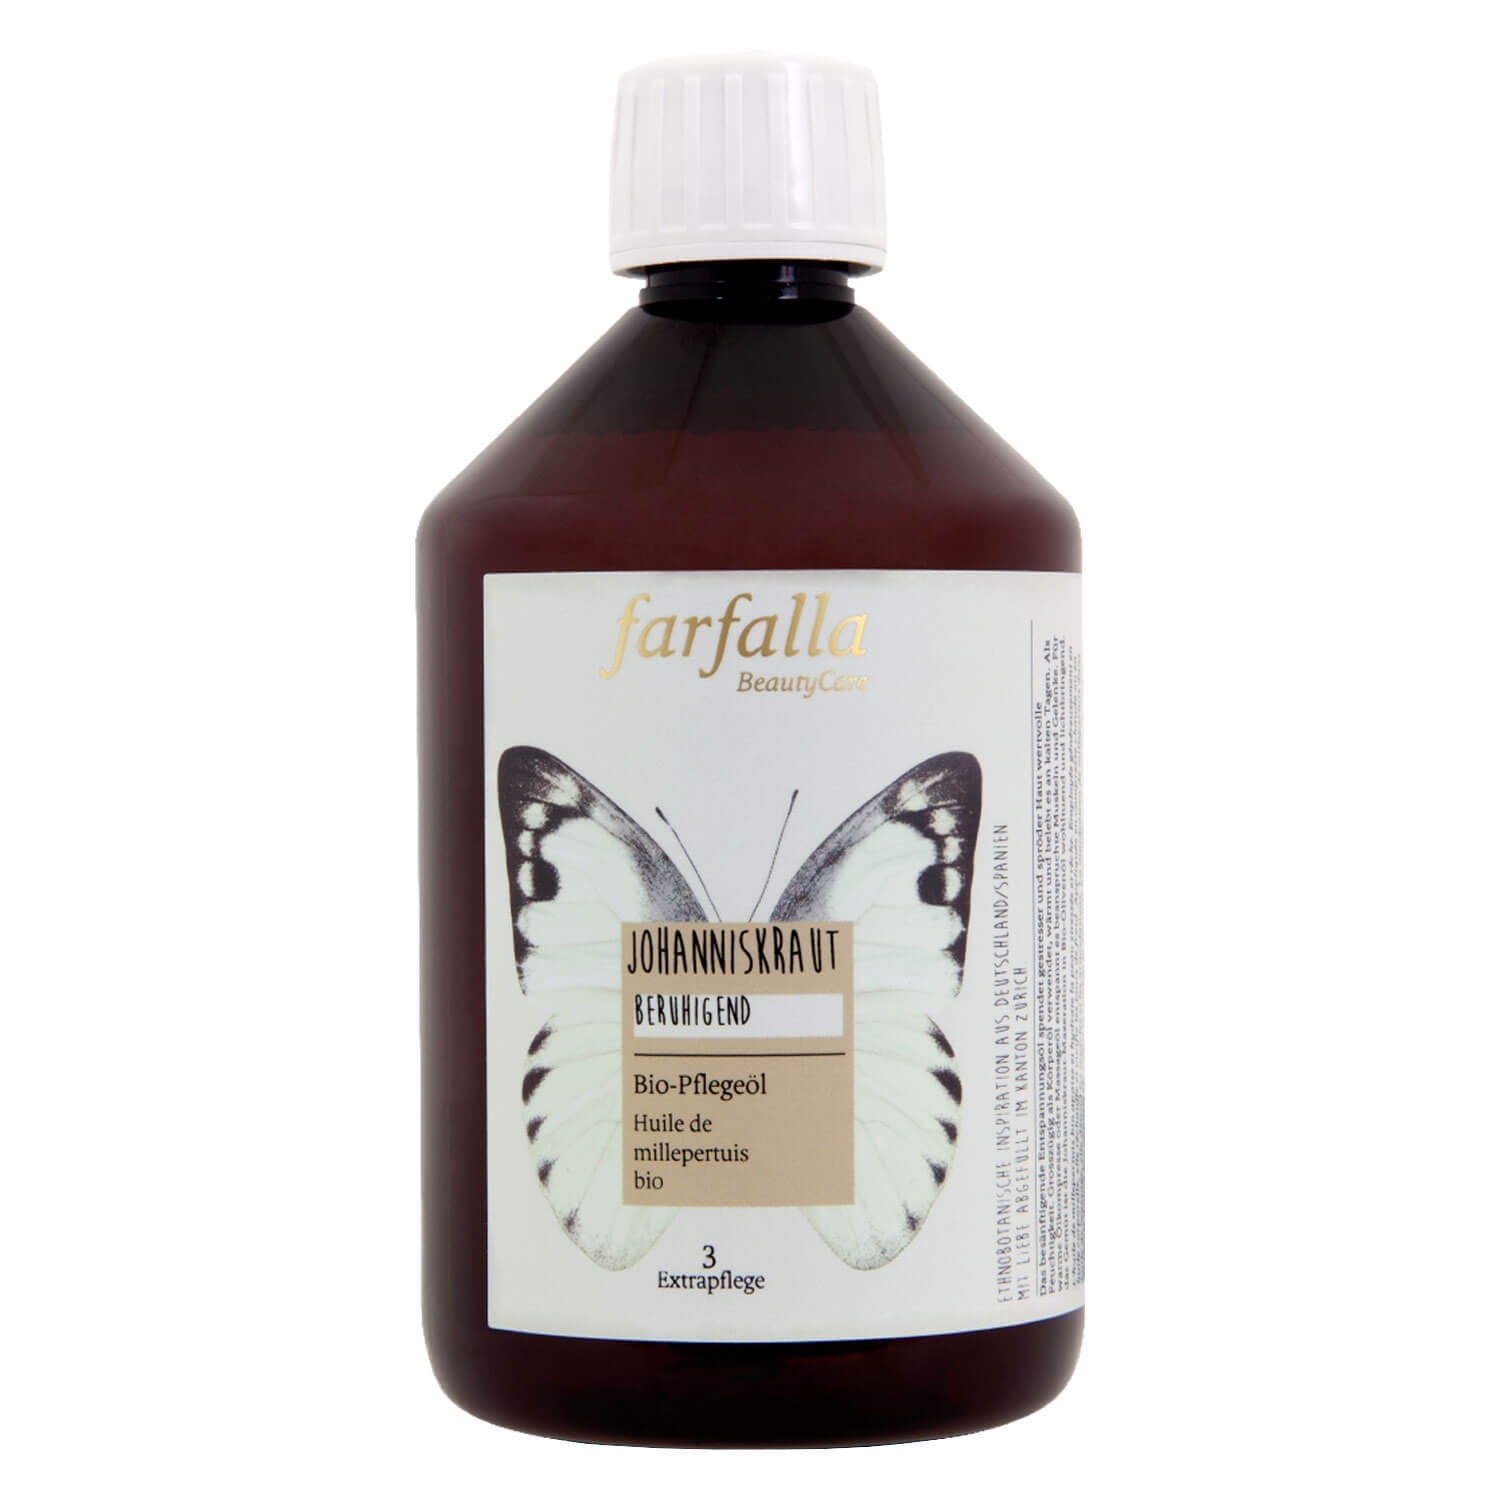 Produktbild von Farfalla Bio-Pflegeöl - Johanniskraut Bio-Pflegeöl beruhigend